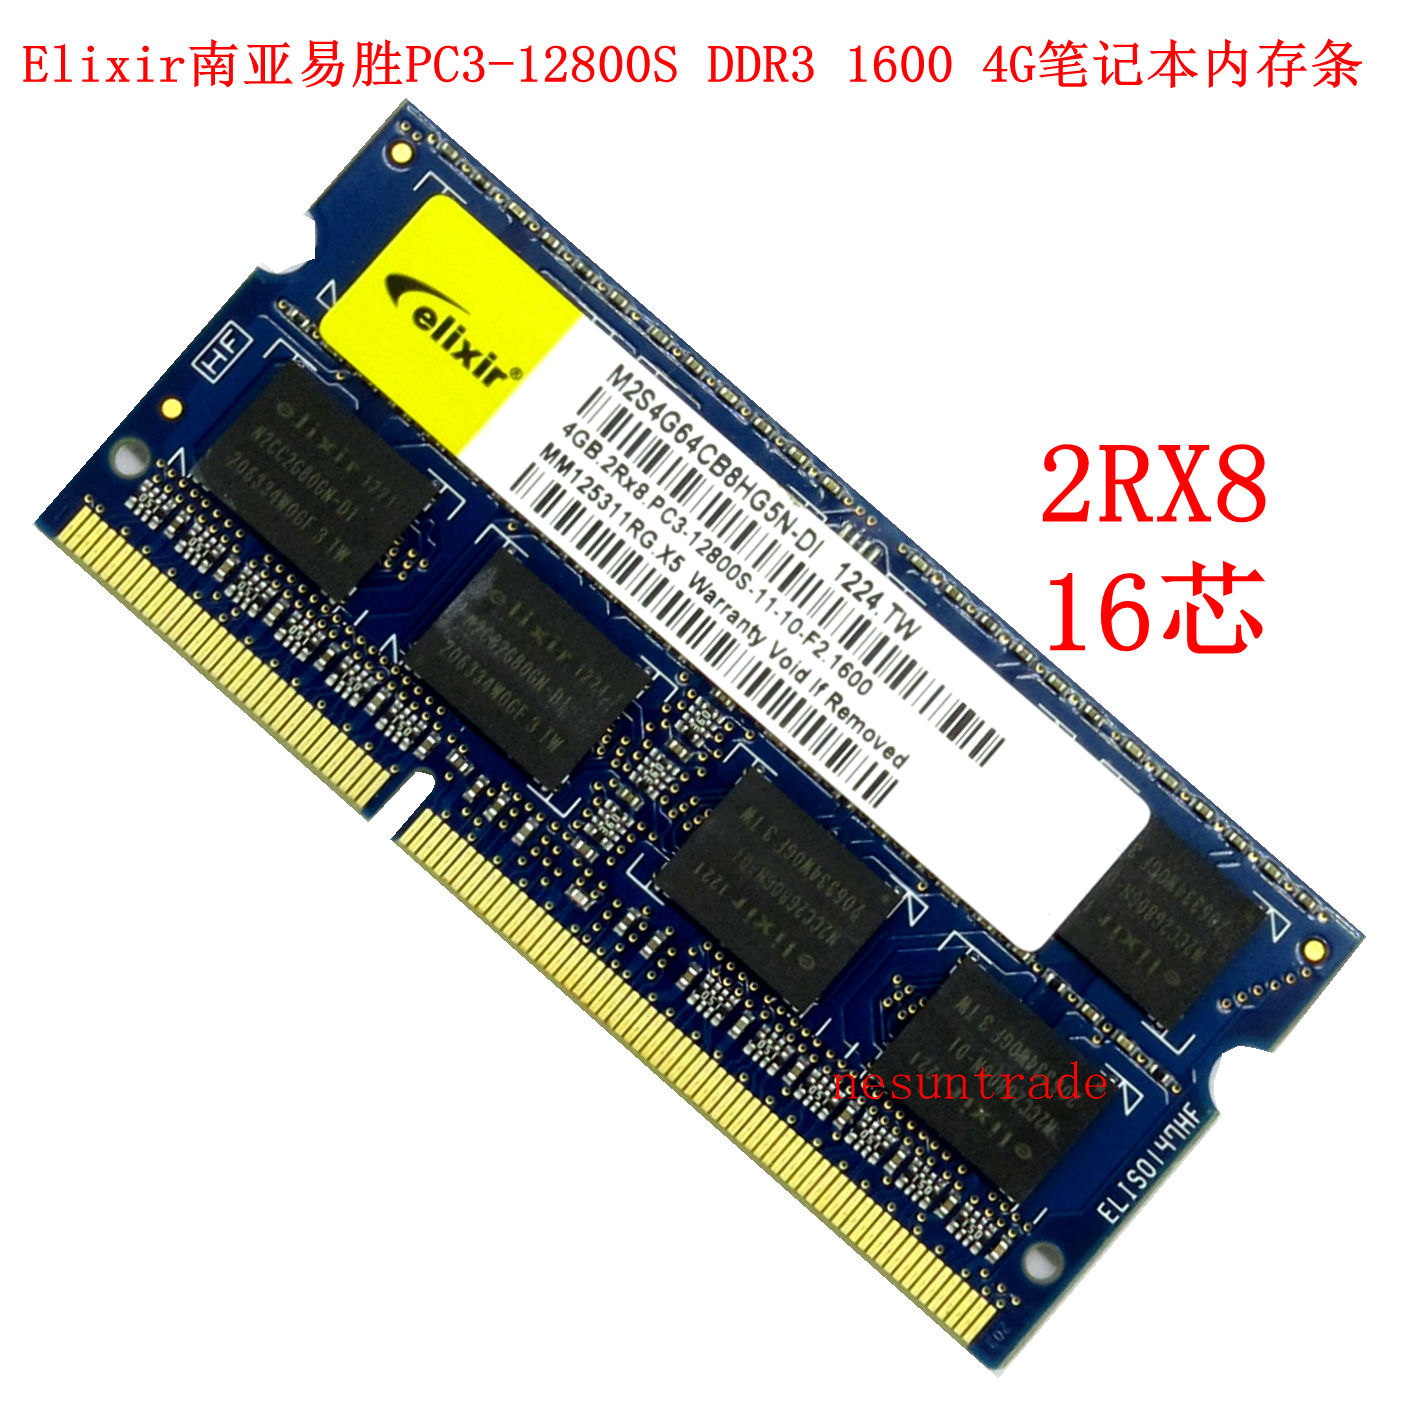 蓝板原装 Elixir南亚易胜 PC3-12800S DDR3 1600 4G 笔记本内存条